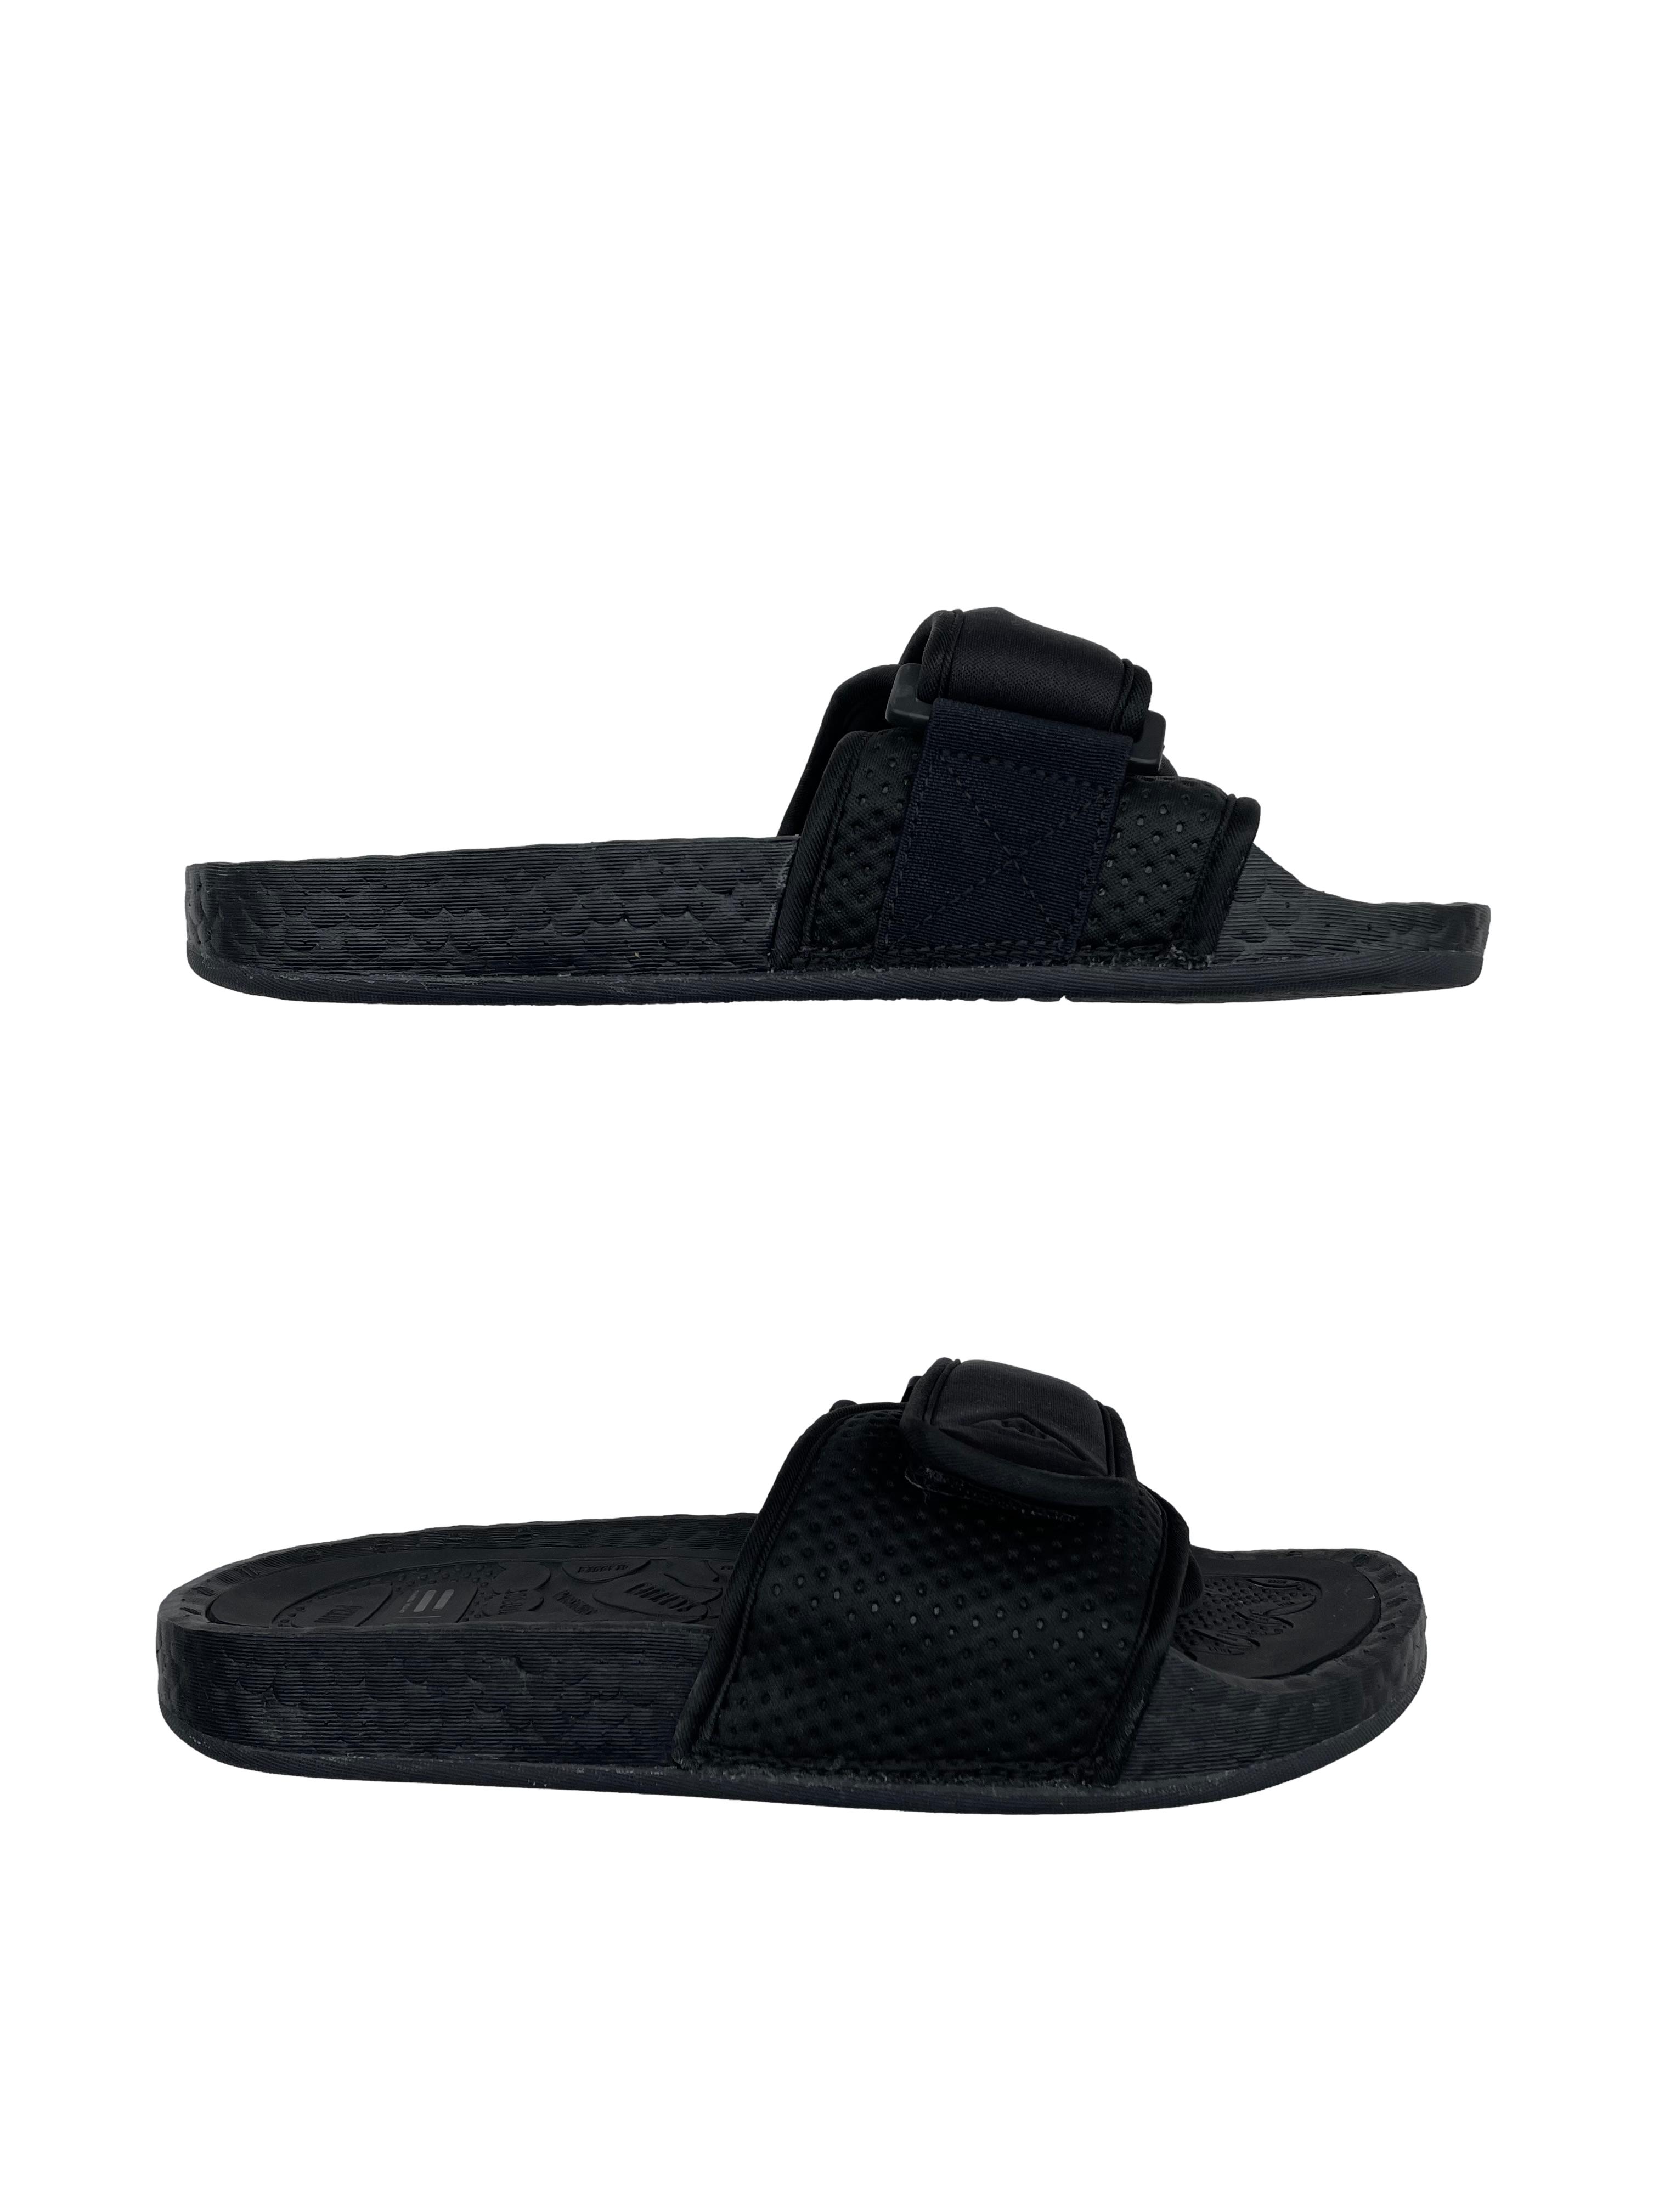 Sandalias Adidas Pharrell Williams negras, empeine acolchado y con velcro. Nuevas, precio original S/ | Las